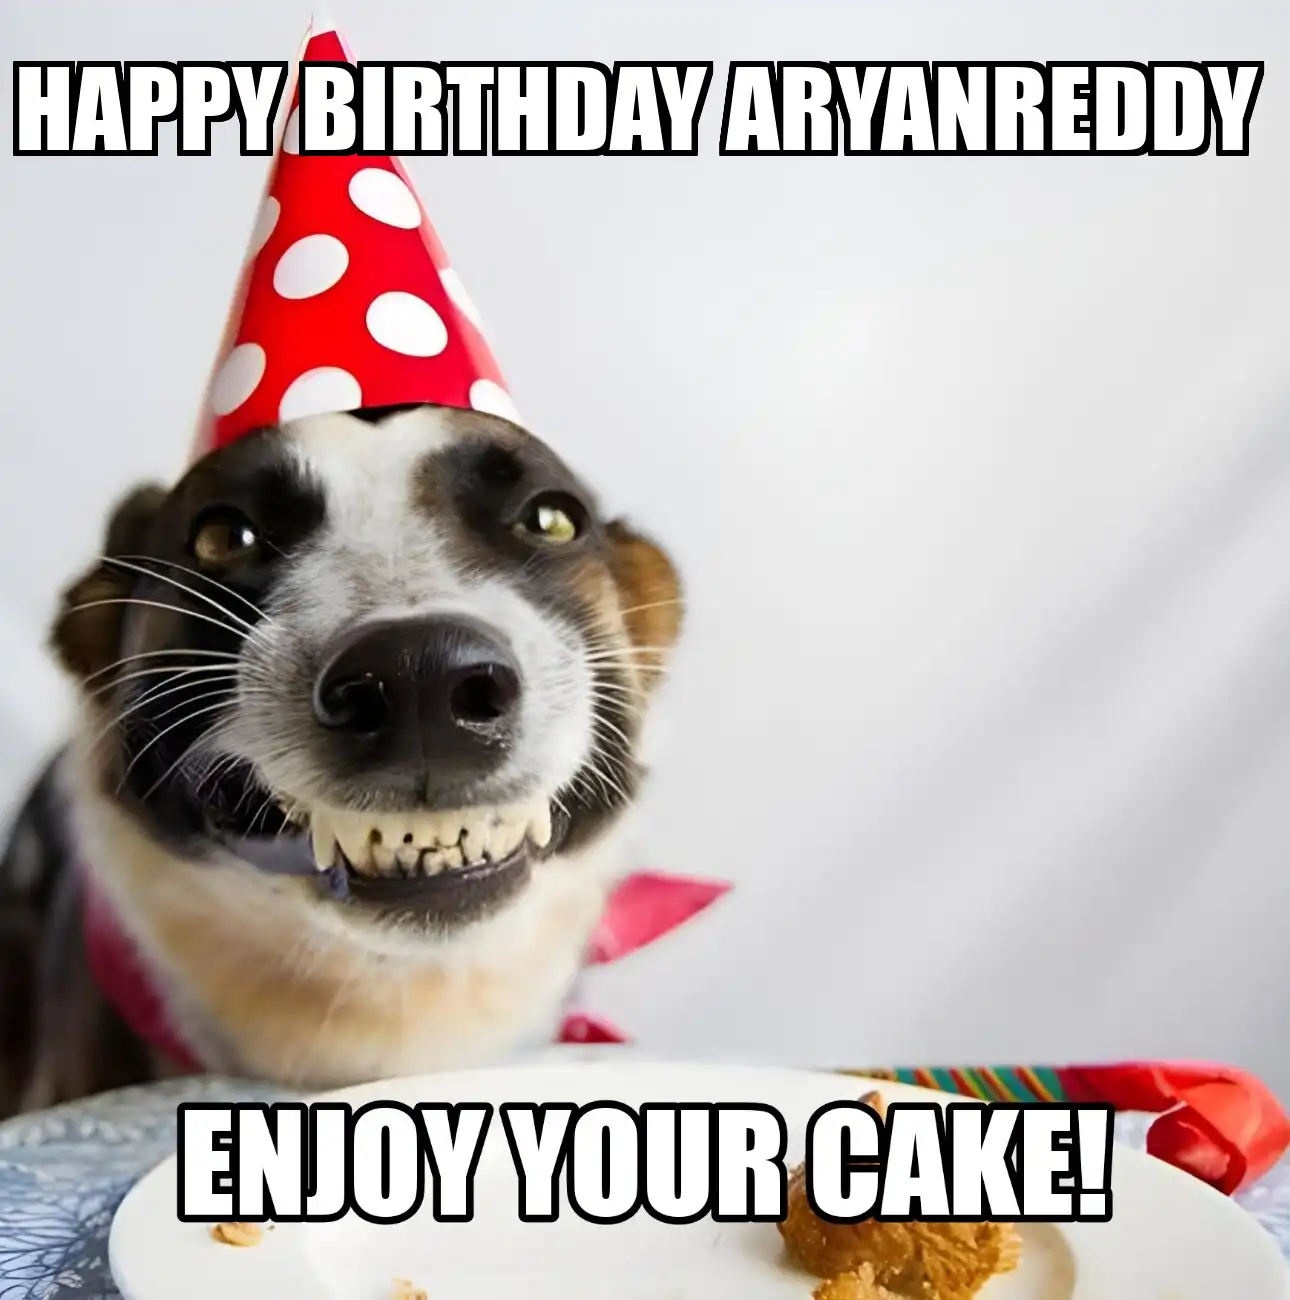 Happy Birthday Aryanreddy Enjoy Your Cake Dog Meme